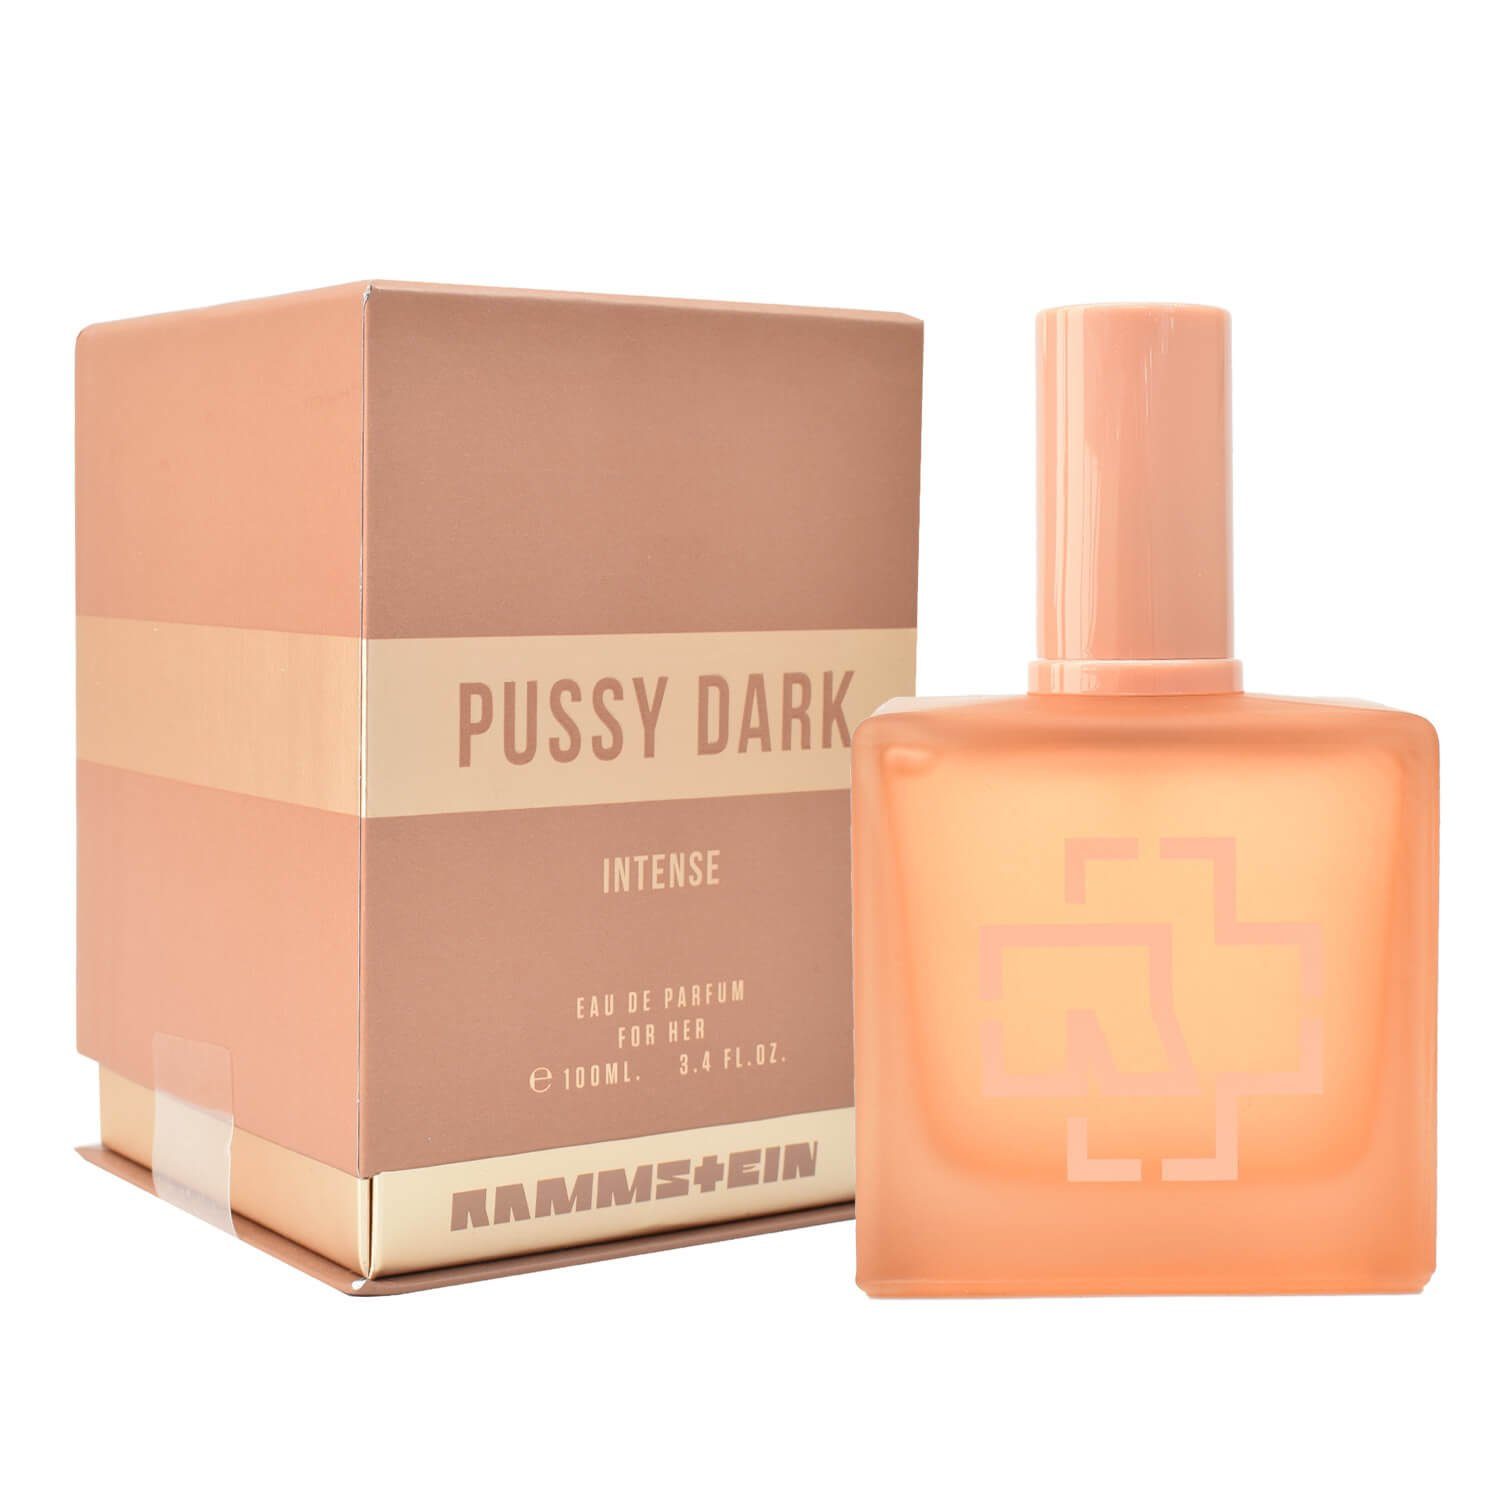 Rammstein Eau de Parfum Pussy Dark Intense